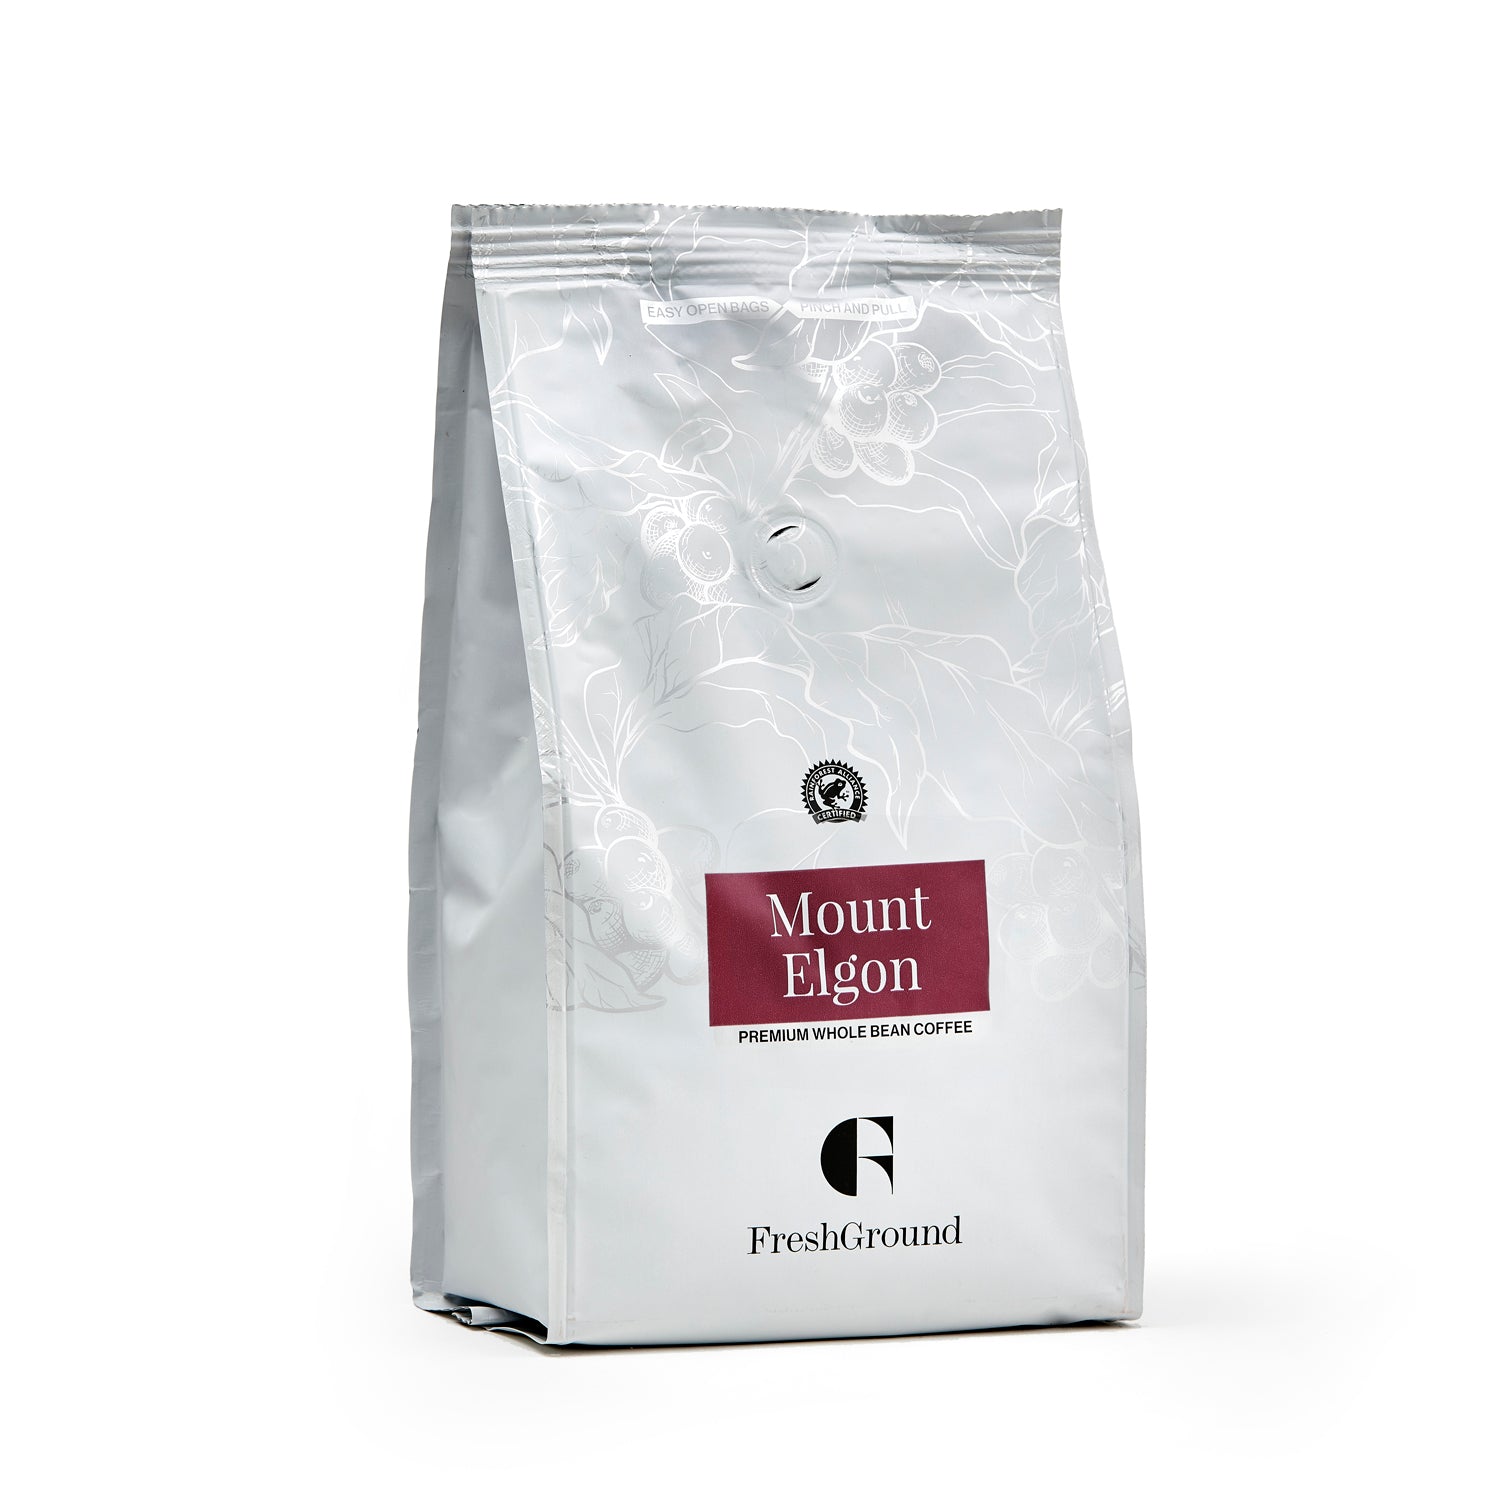 Mount Elgon Premium Whole Bean Coffee